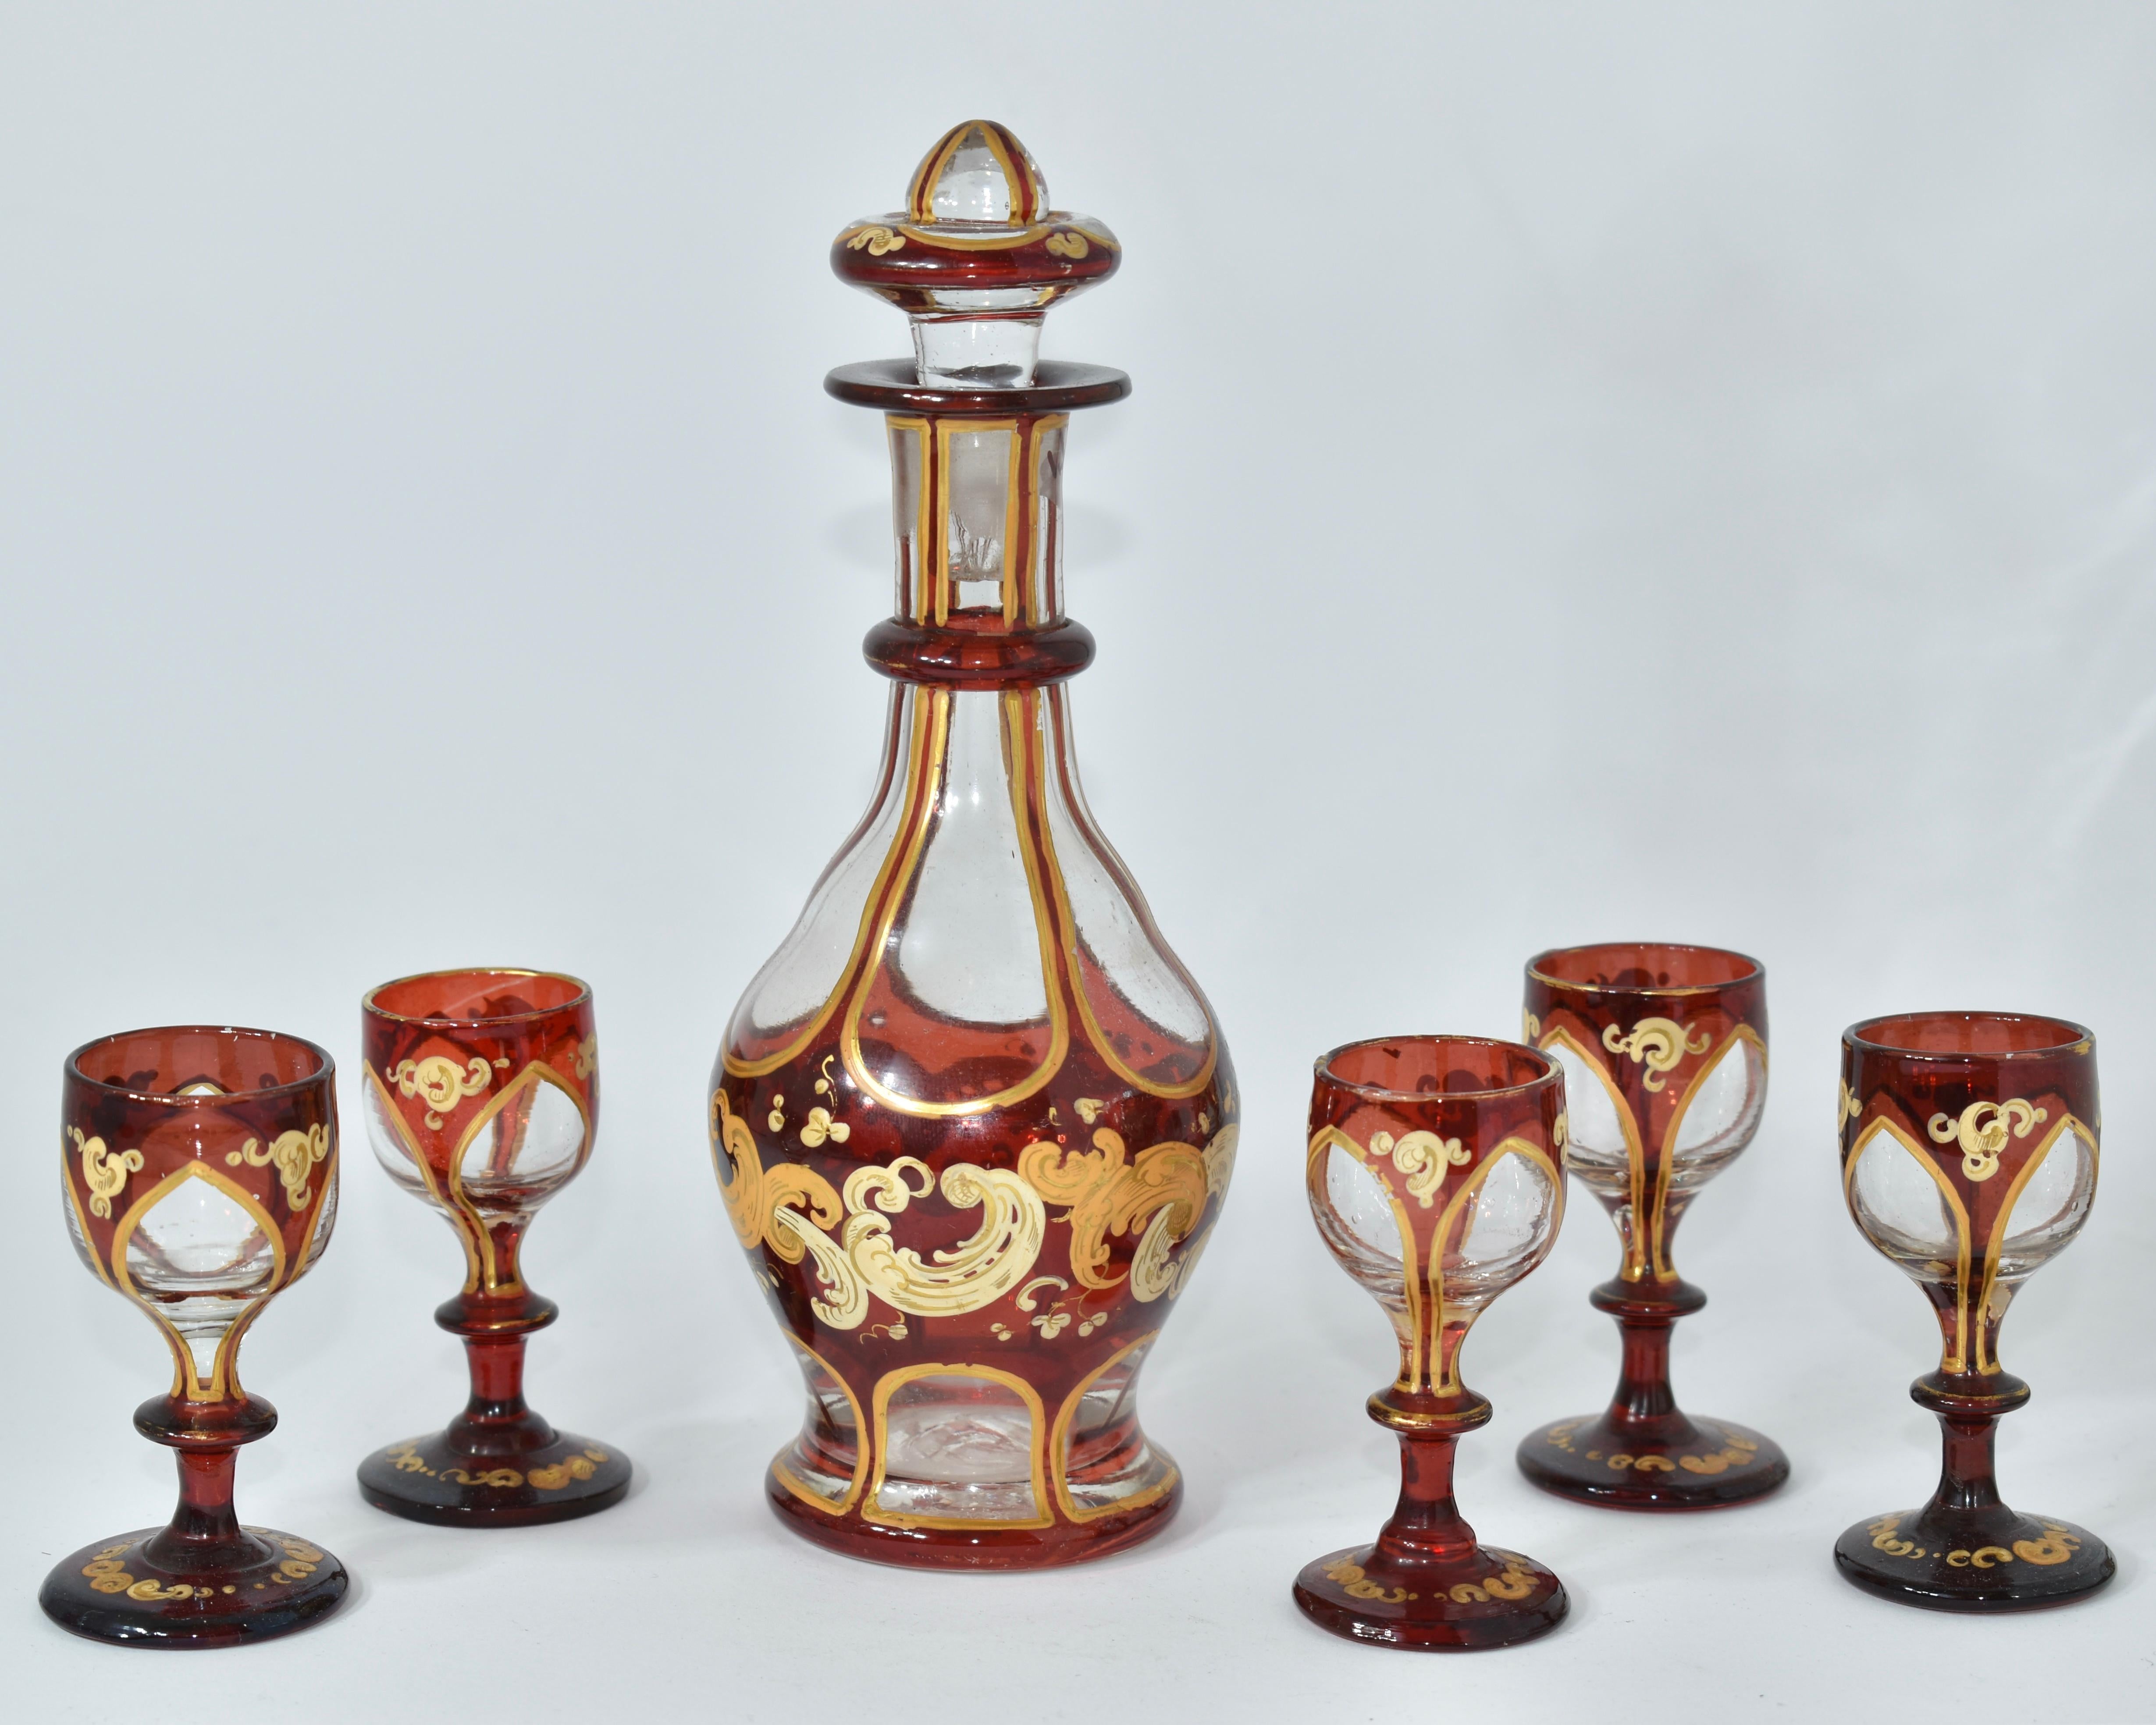 Magnifique set à liqueur, carafe et 5 verres assortis

Verre de Bohème transparent et rouge rubis 

Richement décoré sur tout le pourtour avec des volutes en émail doré et des rehauts de dorure

Bohemia, 19ème siècle